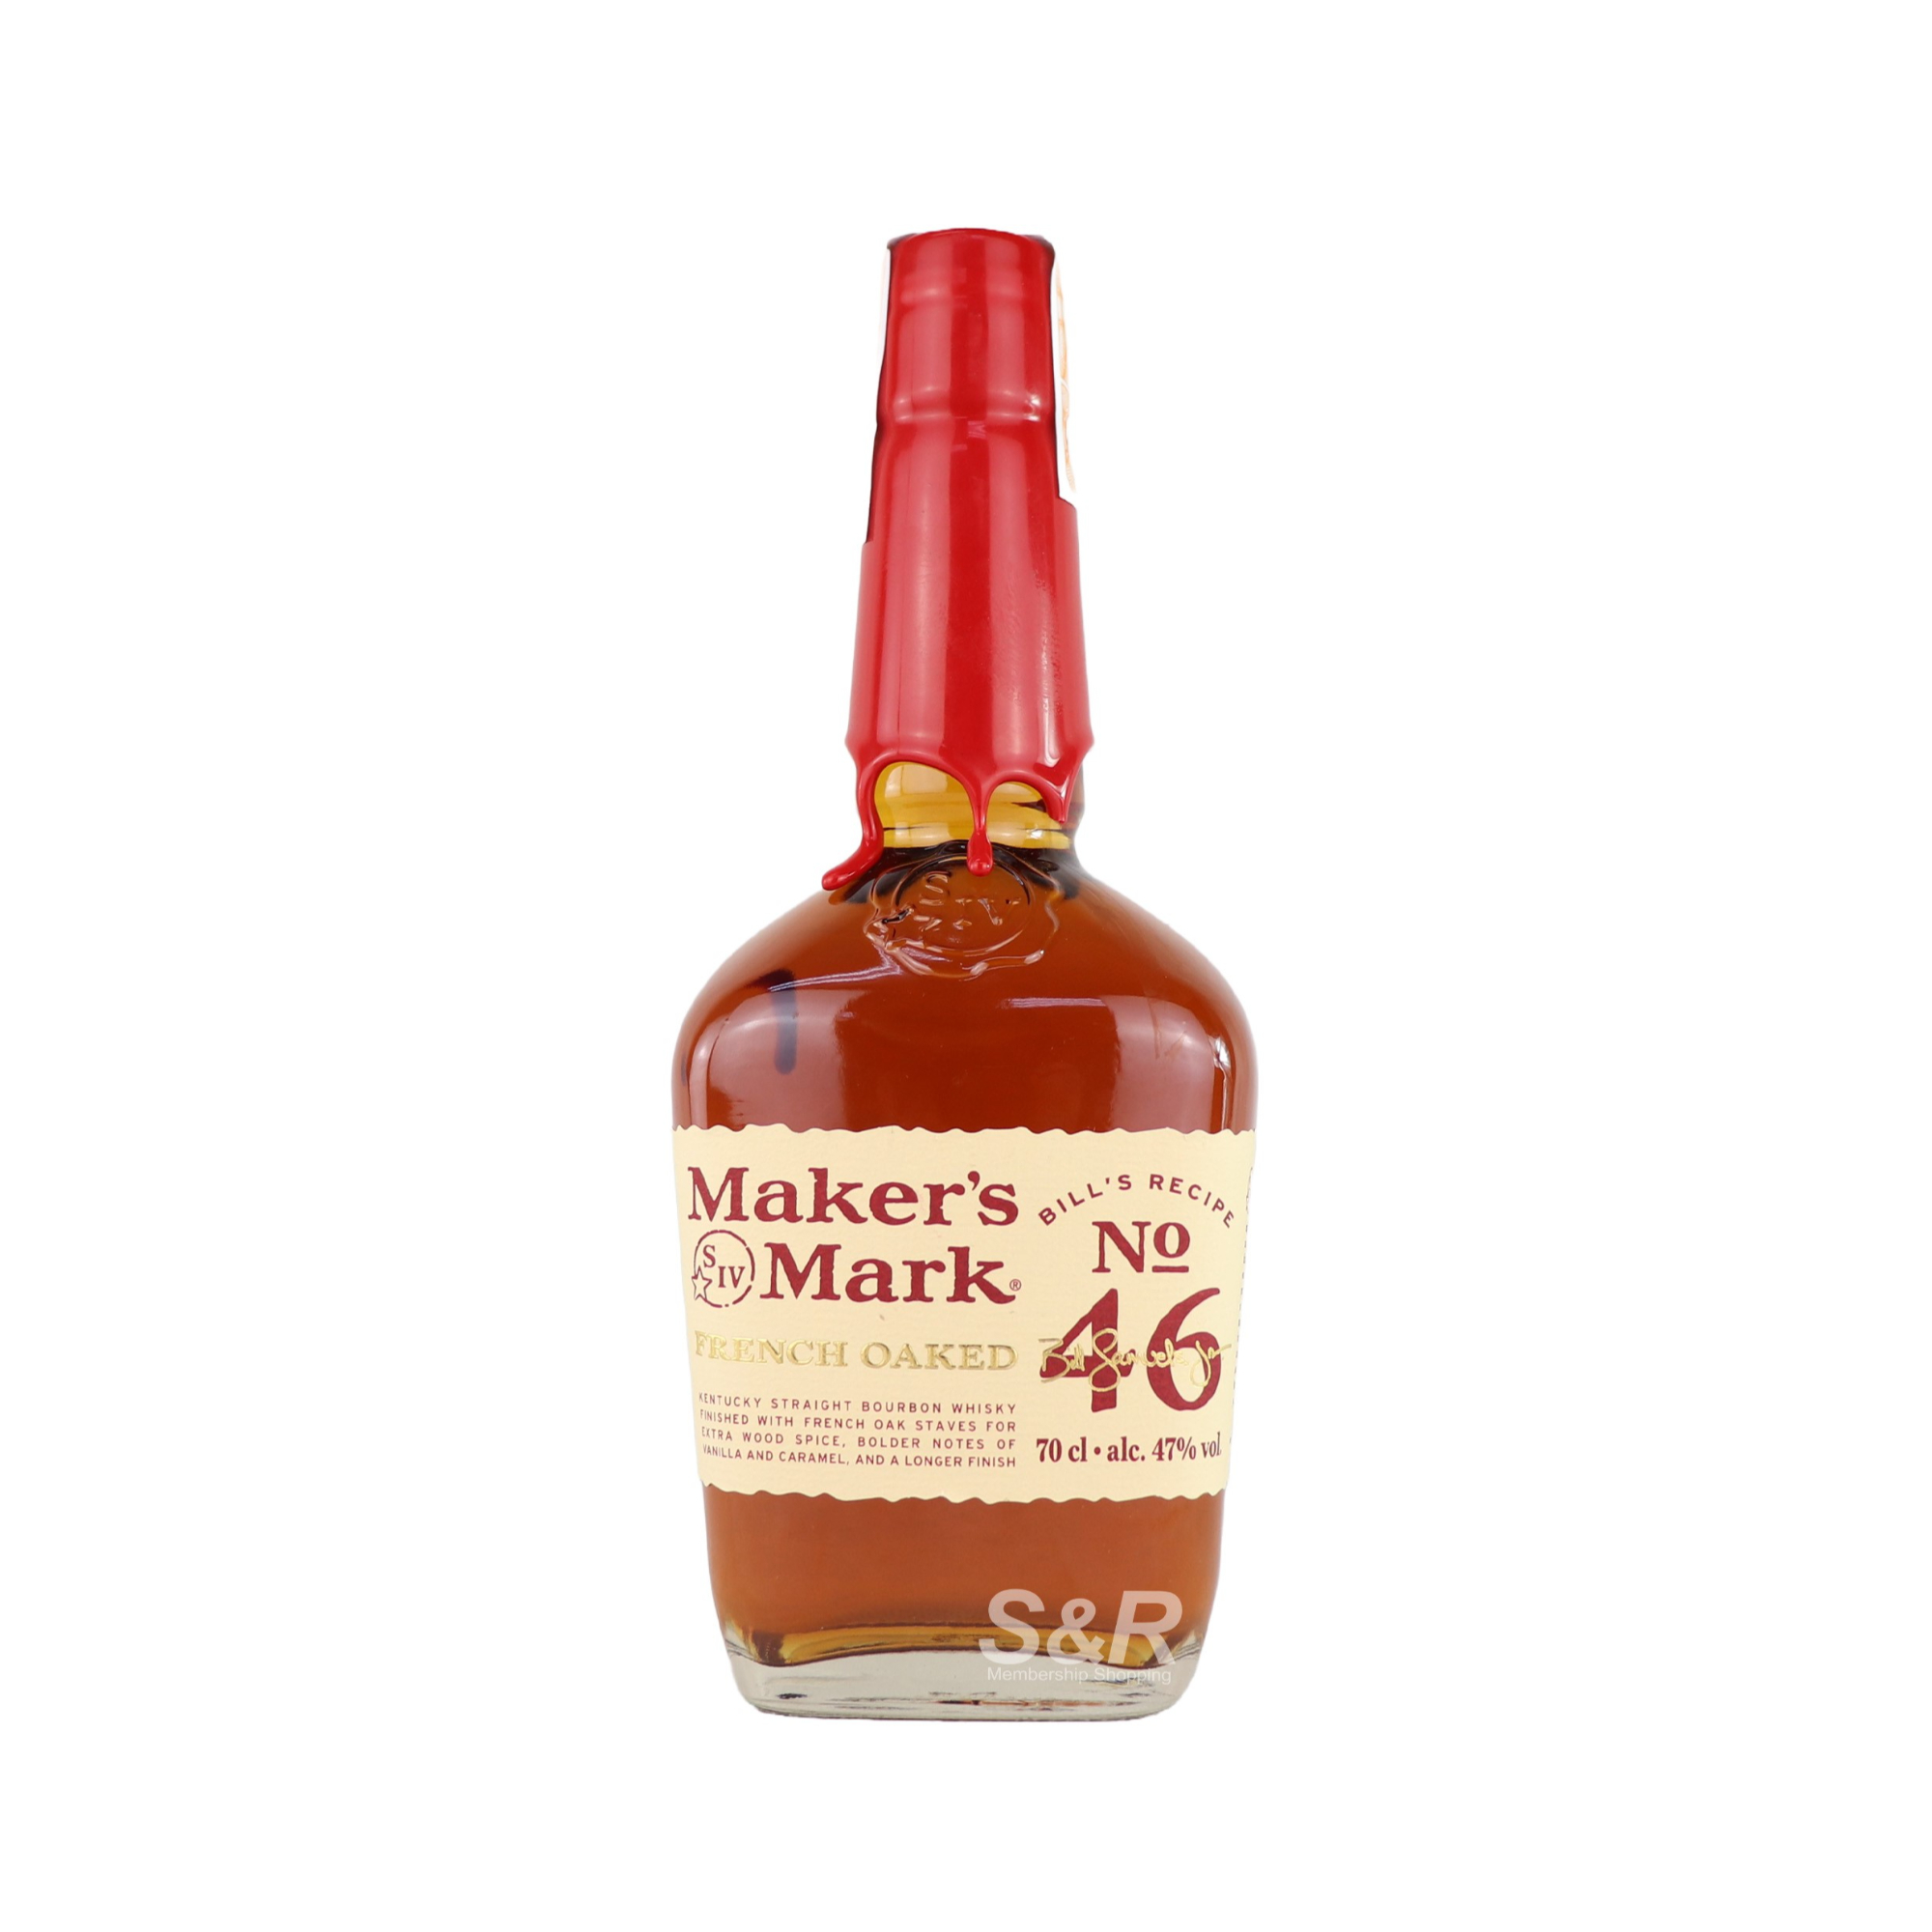 Maker's Mark 46 Kentucky Straight Bourbon Whisky 700mL